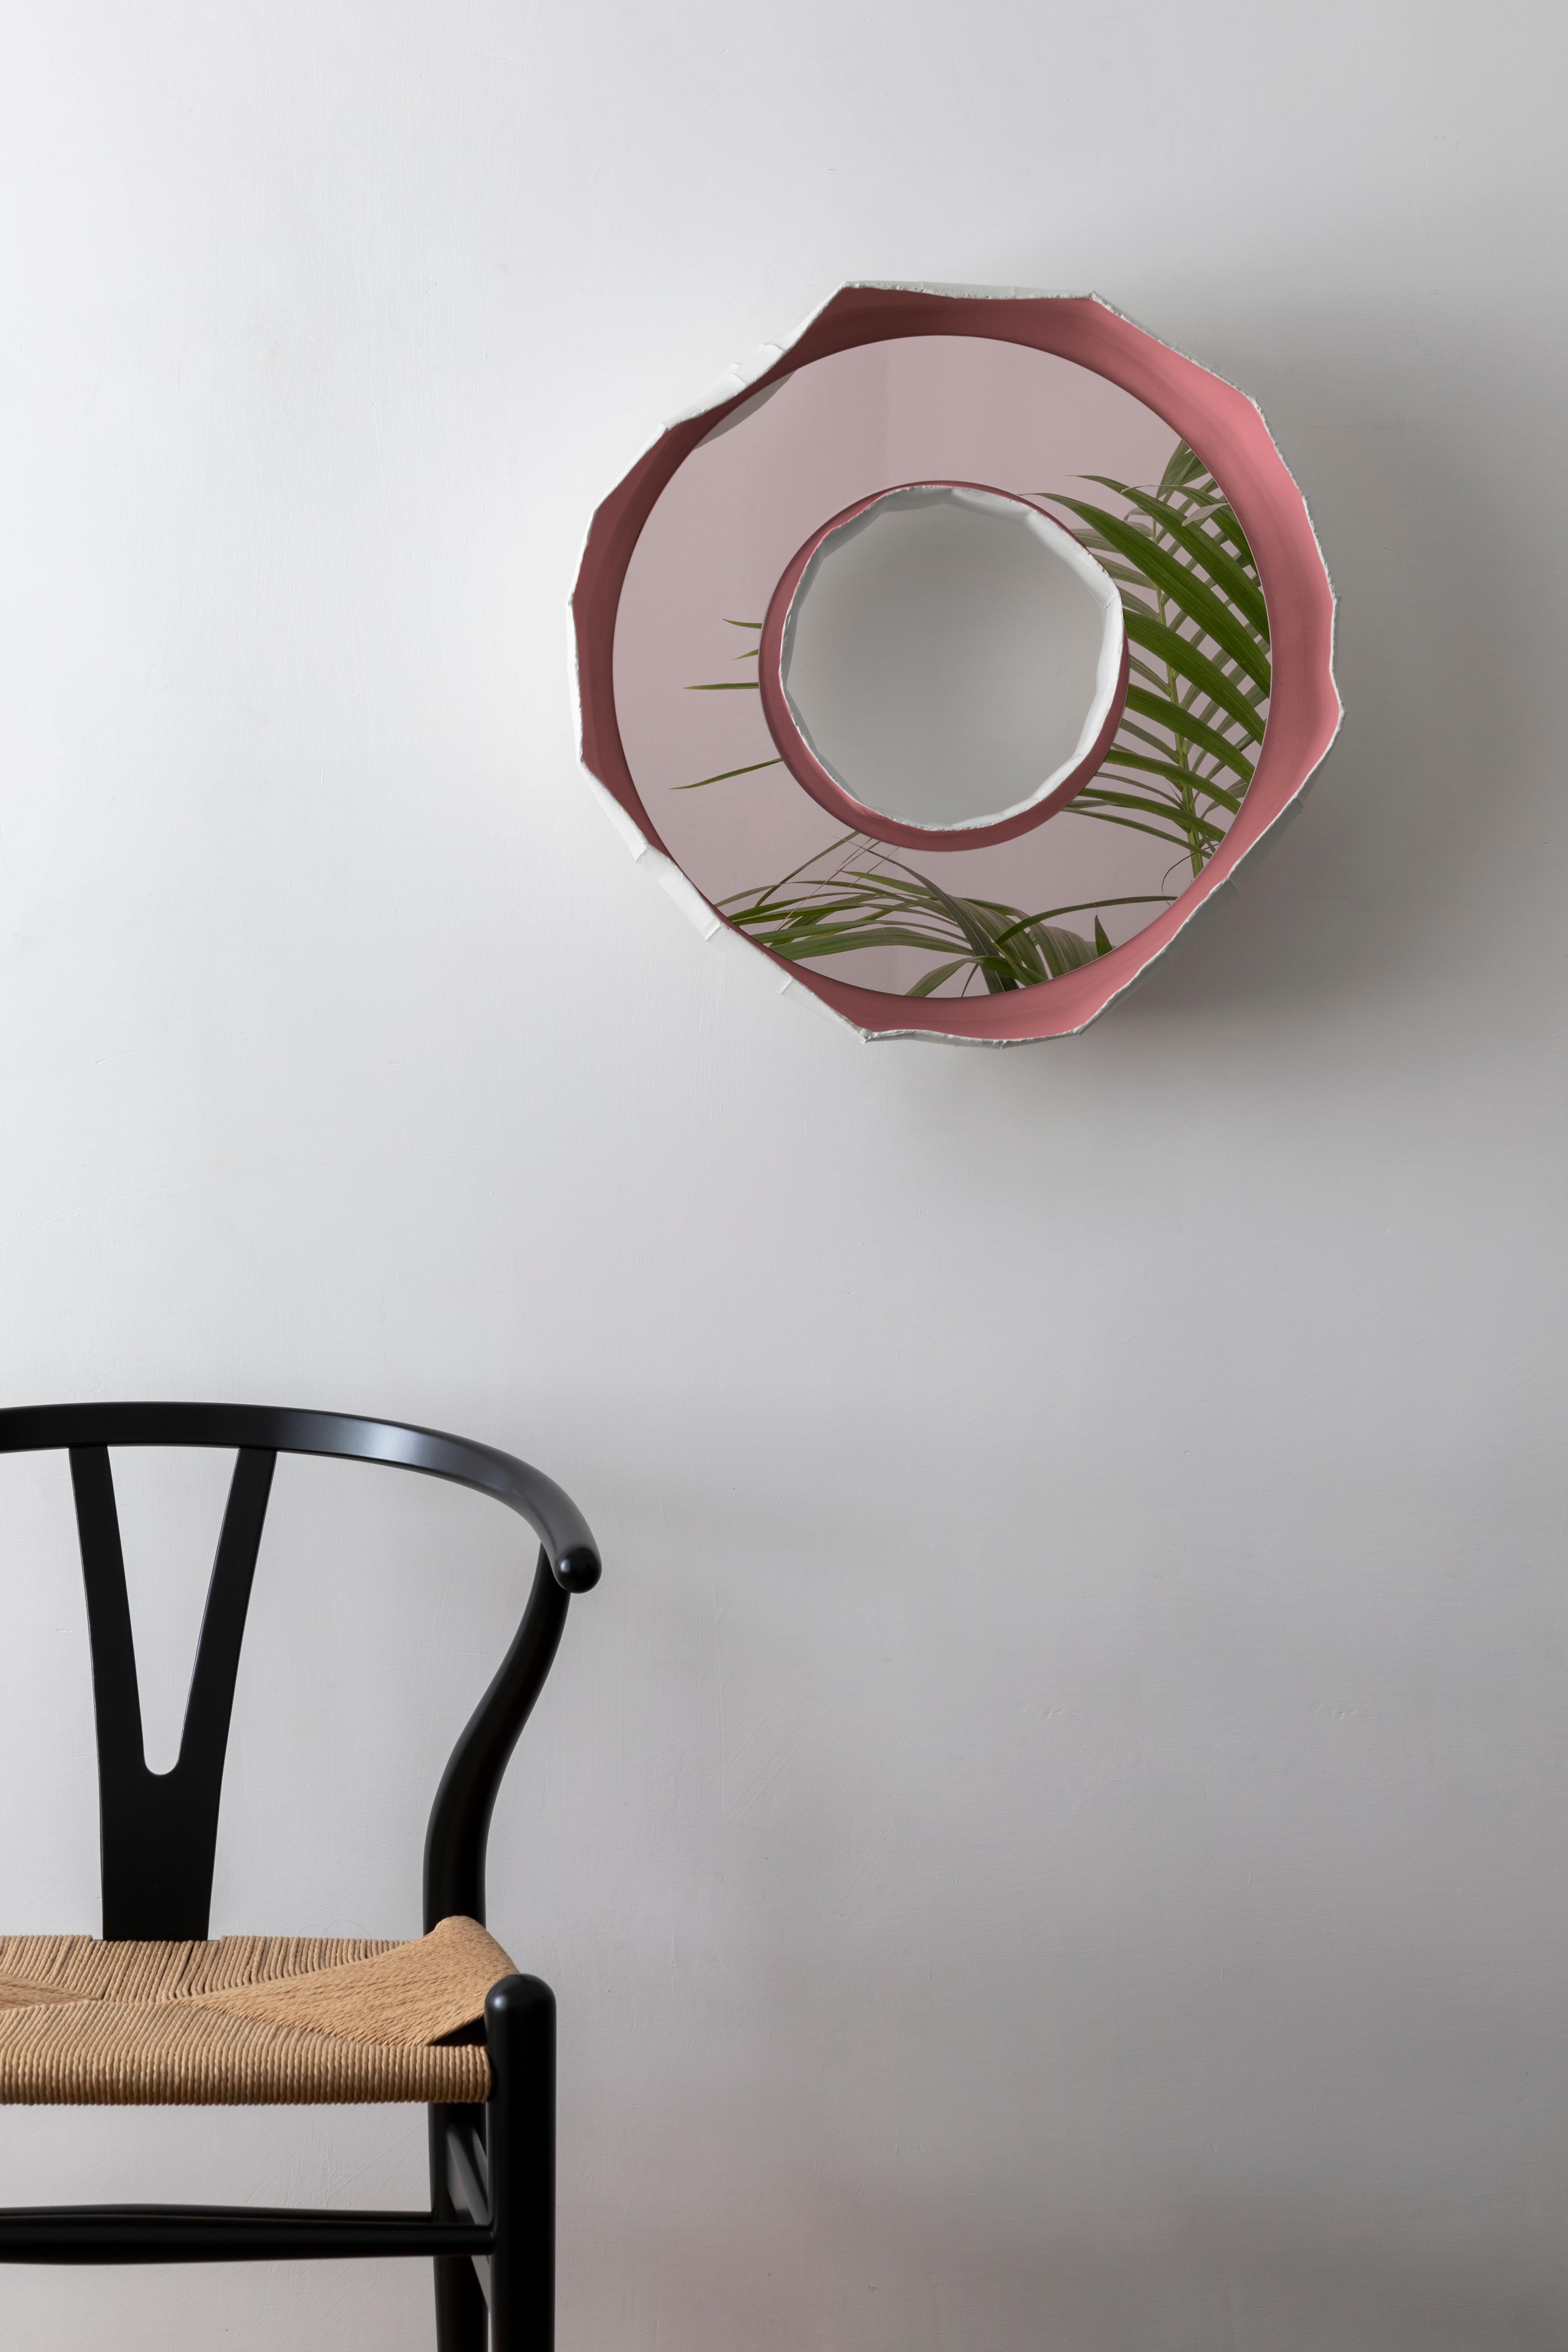 RING NOVA, un superbe miroir en céramique fabriqué à la main en Italie, l'un des deux designs qui composent la collection REFLECTIONS, fruit d'une collaboration entre l'artiste Paola Paronetto et le designer Giovanni Botticelli, qui intègre la